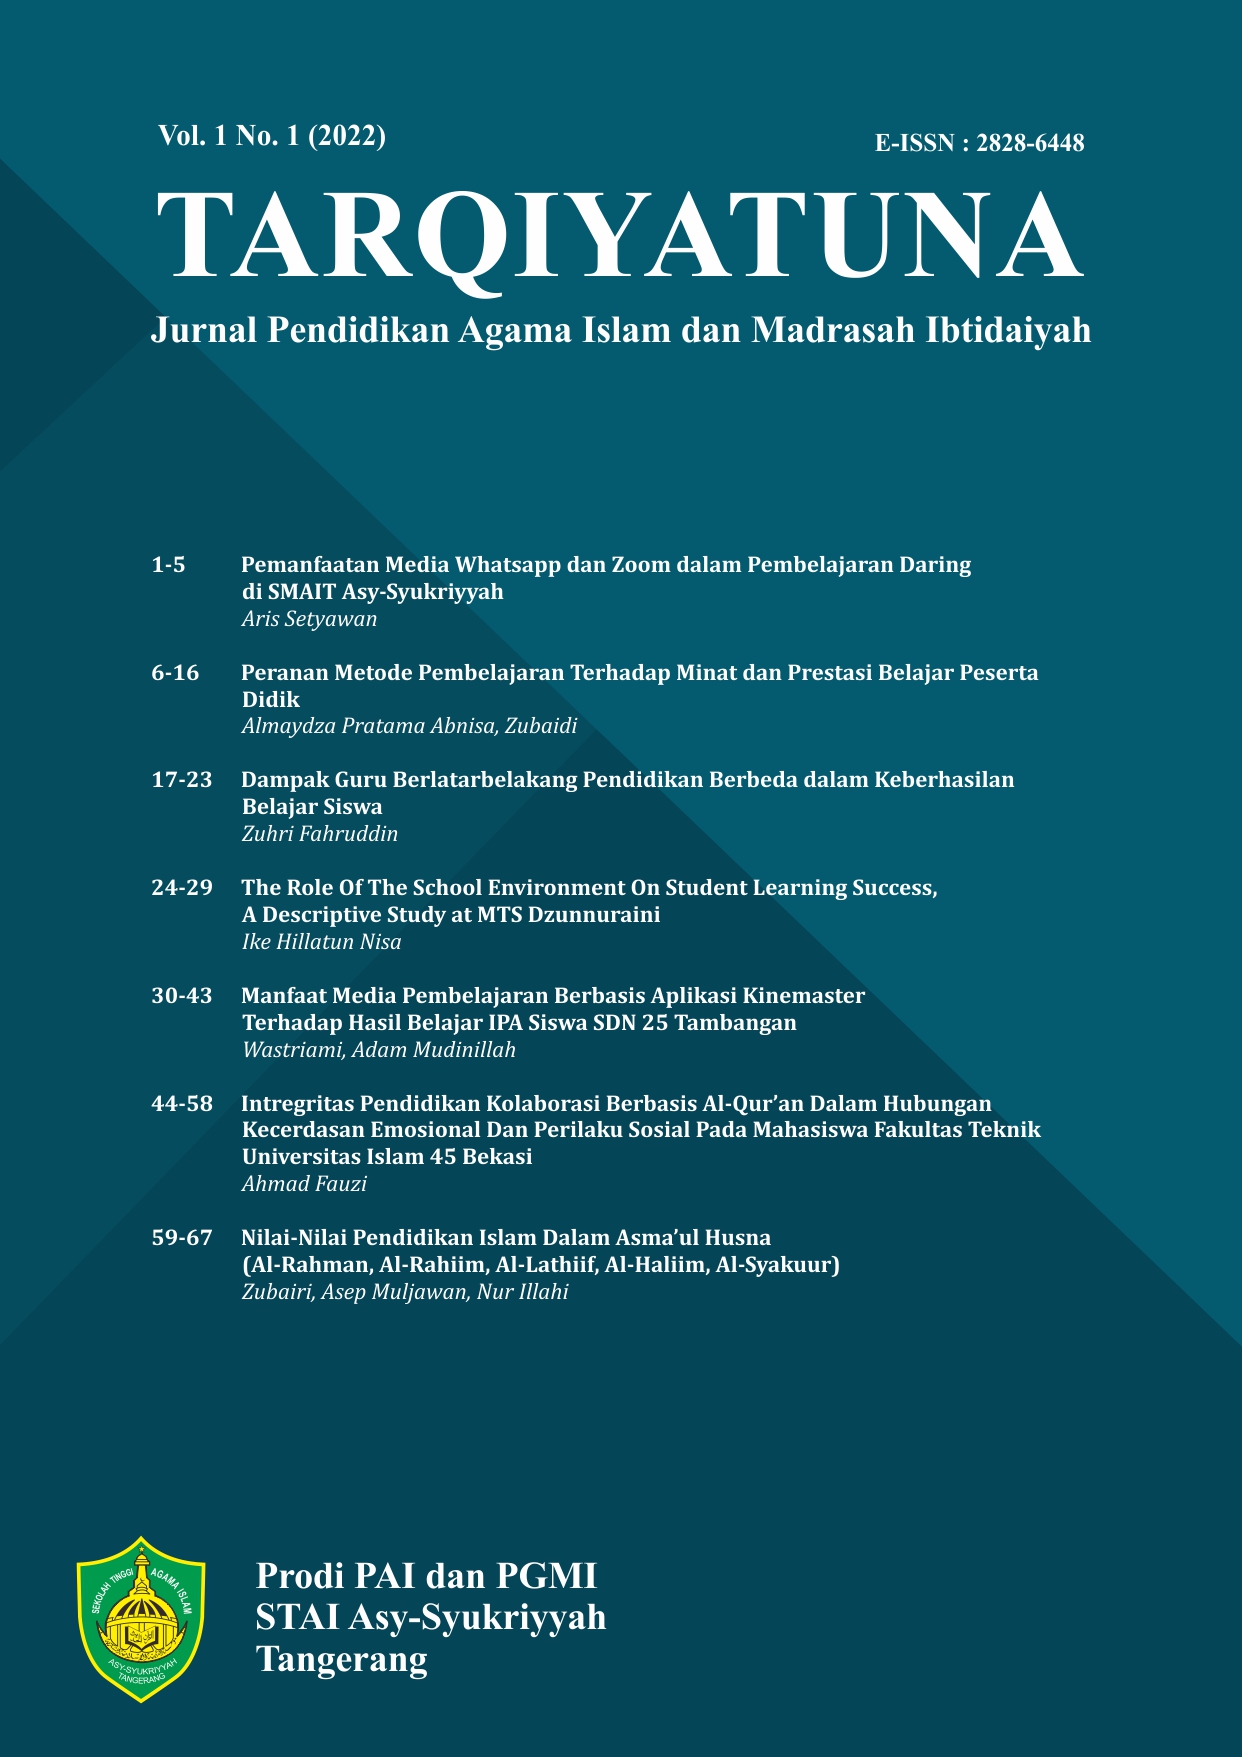 					Lihat Vol 1 No 1 (2022): TARQIYATUNA: Jurnal Pendidikan Agama Islam dan Madrasah Ibtidaiyah
				